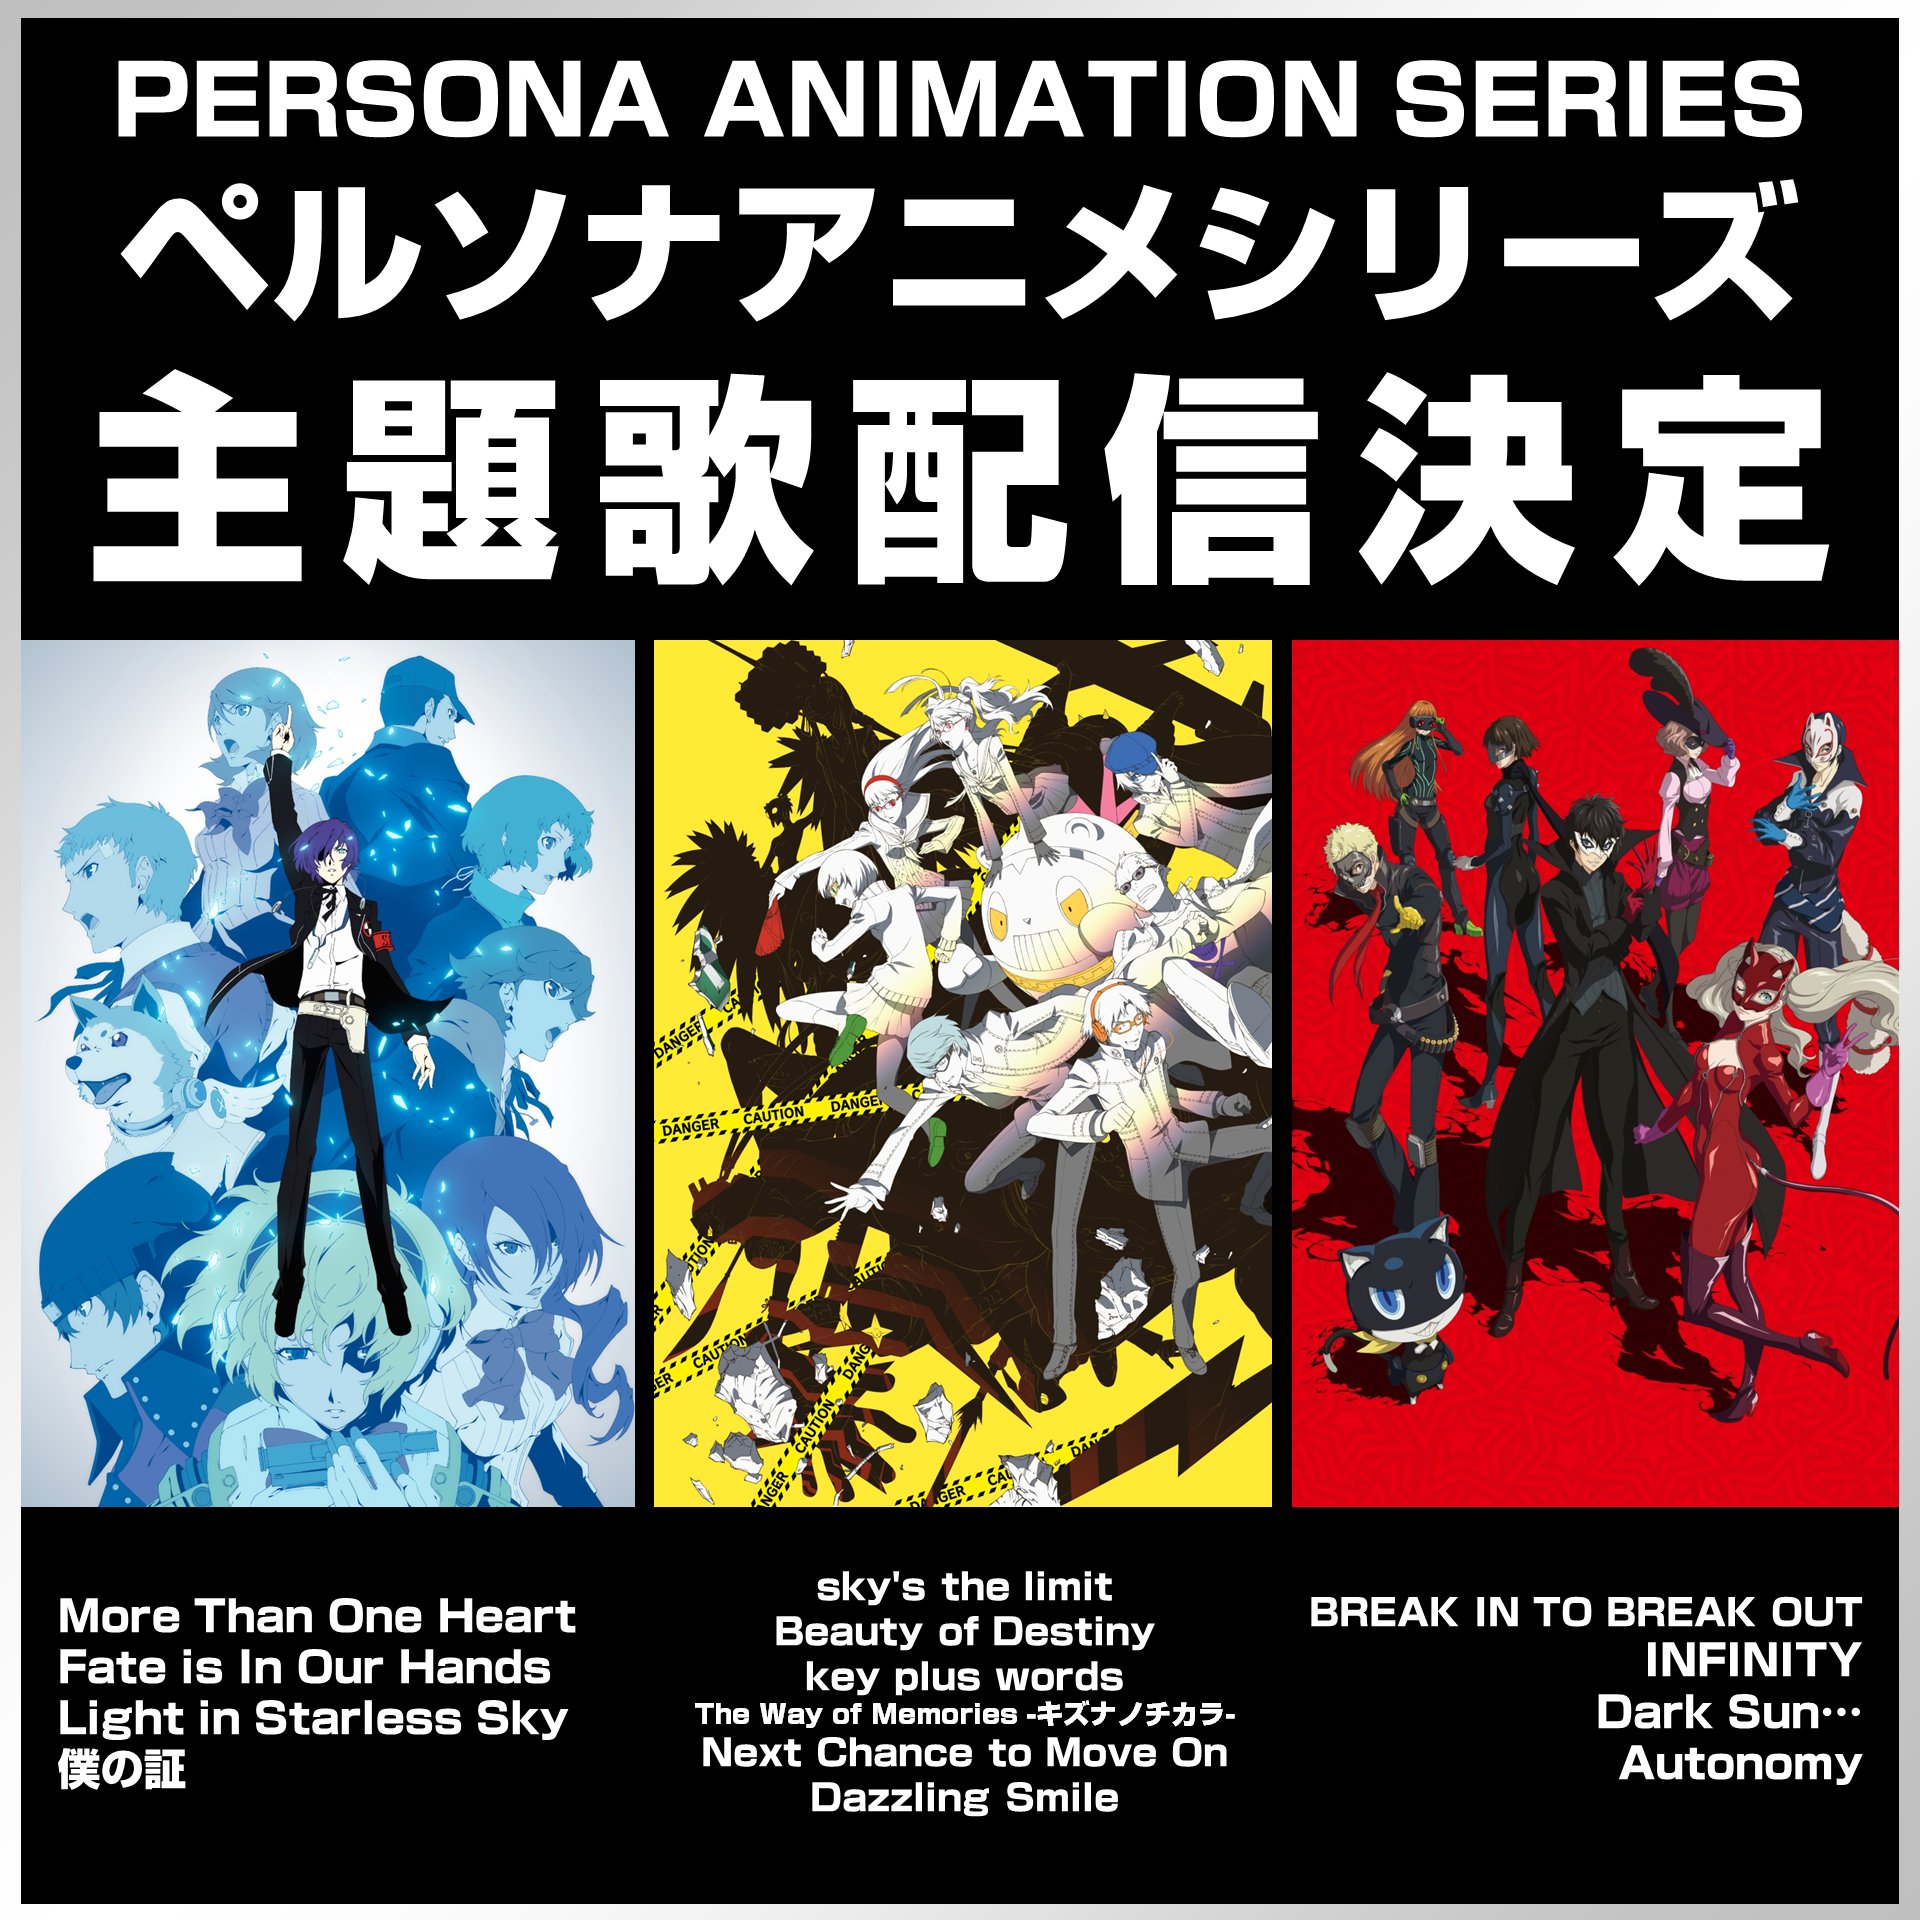 Песни Persona Anime OP/ED появятся на потоковых платформах